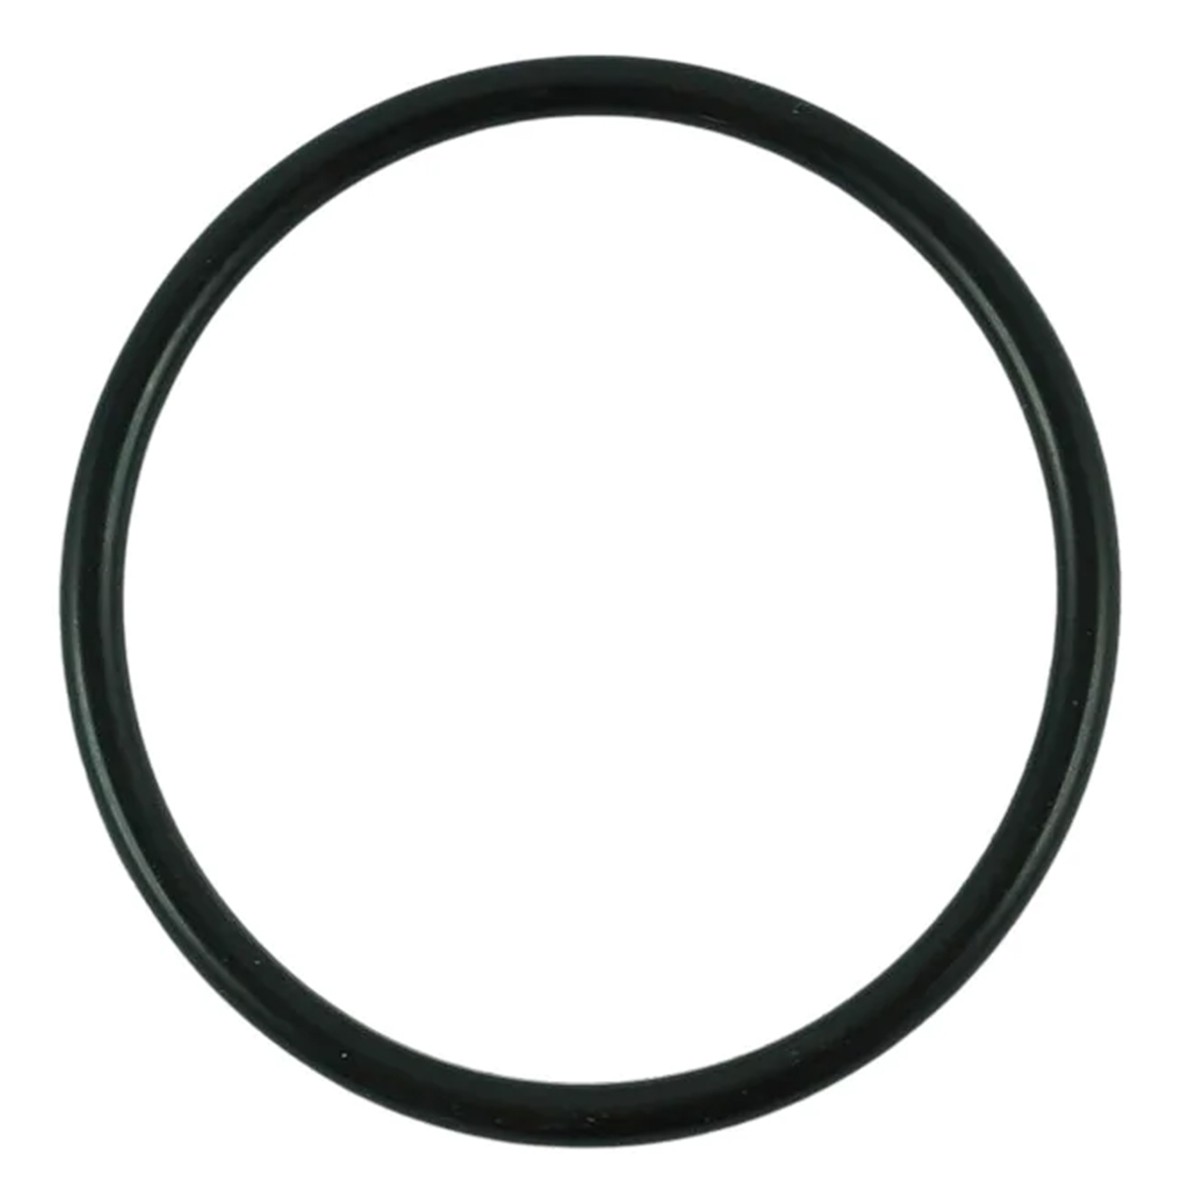 O-ring 44.40 x 3.10 mm / LS MT3.35 / LS MT3.40 / LS MT3.50 / LS MT3.60 / S802045010 / 40029223